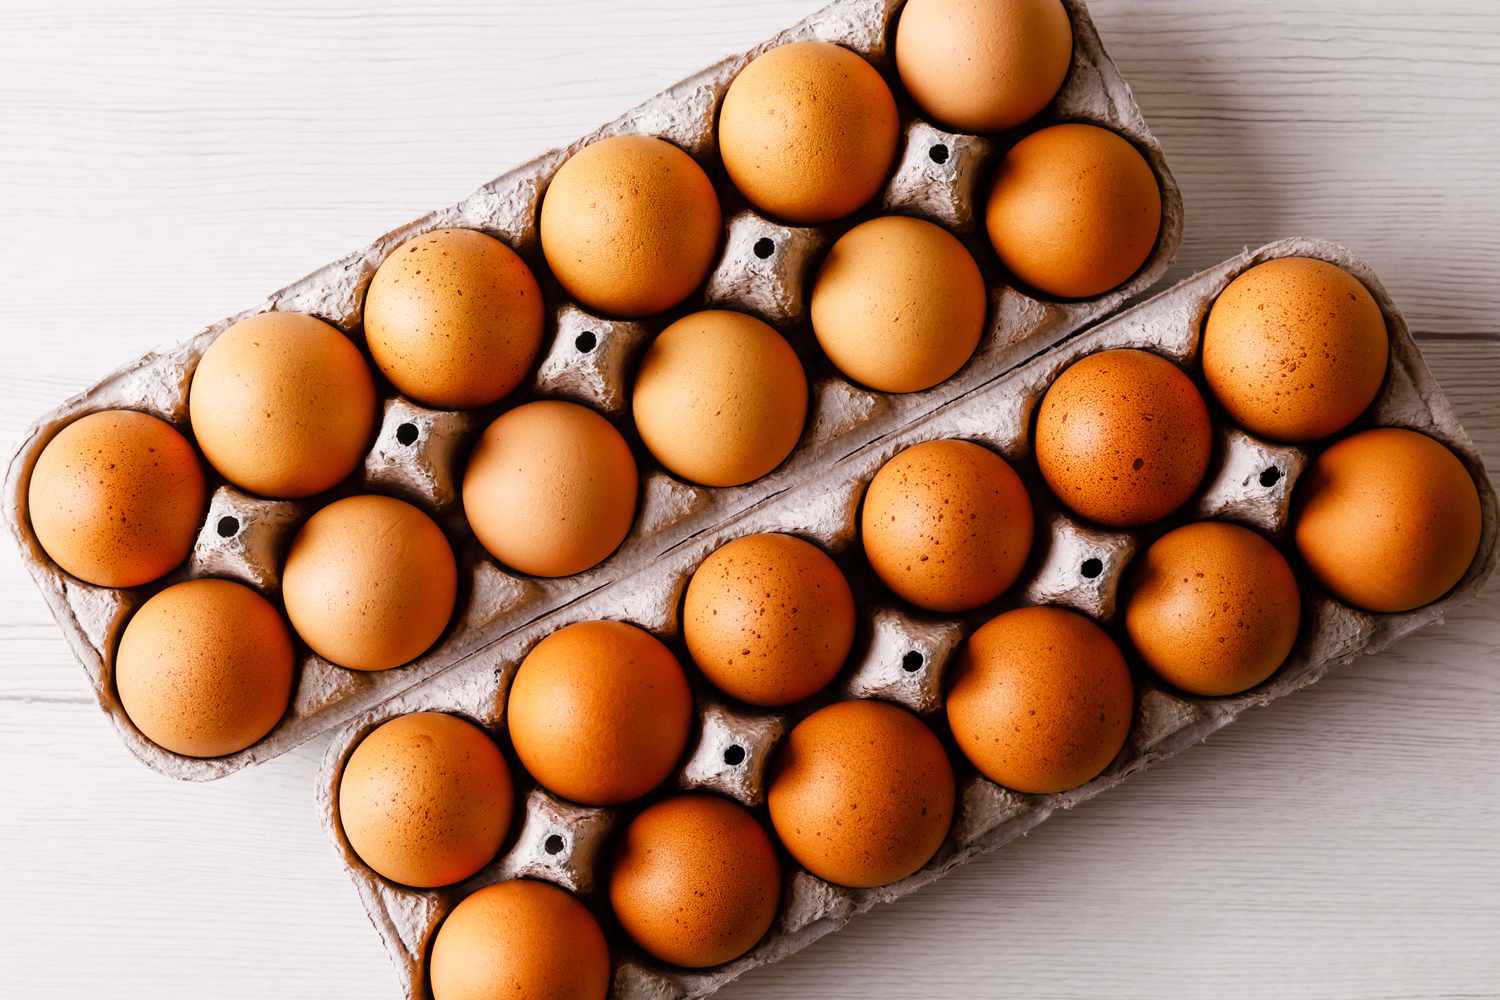 Azərbaycan Rusiyaya 36 ton yumurta ixrac edib